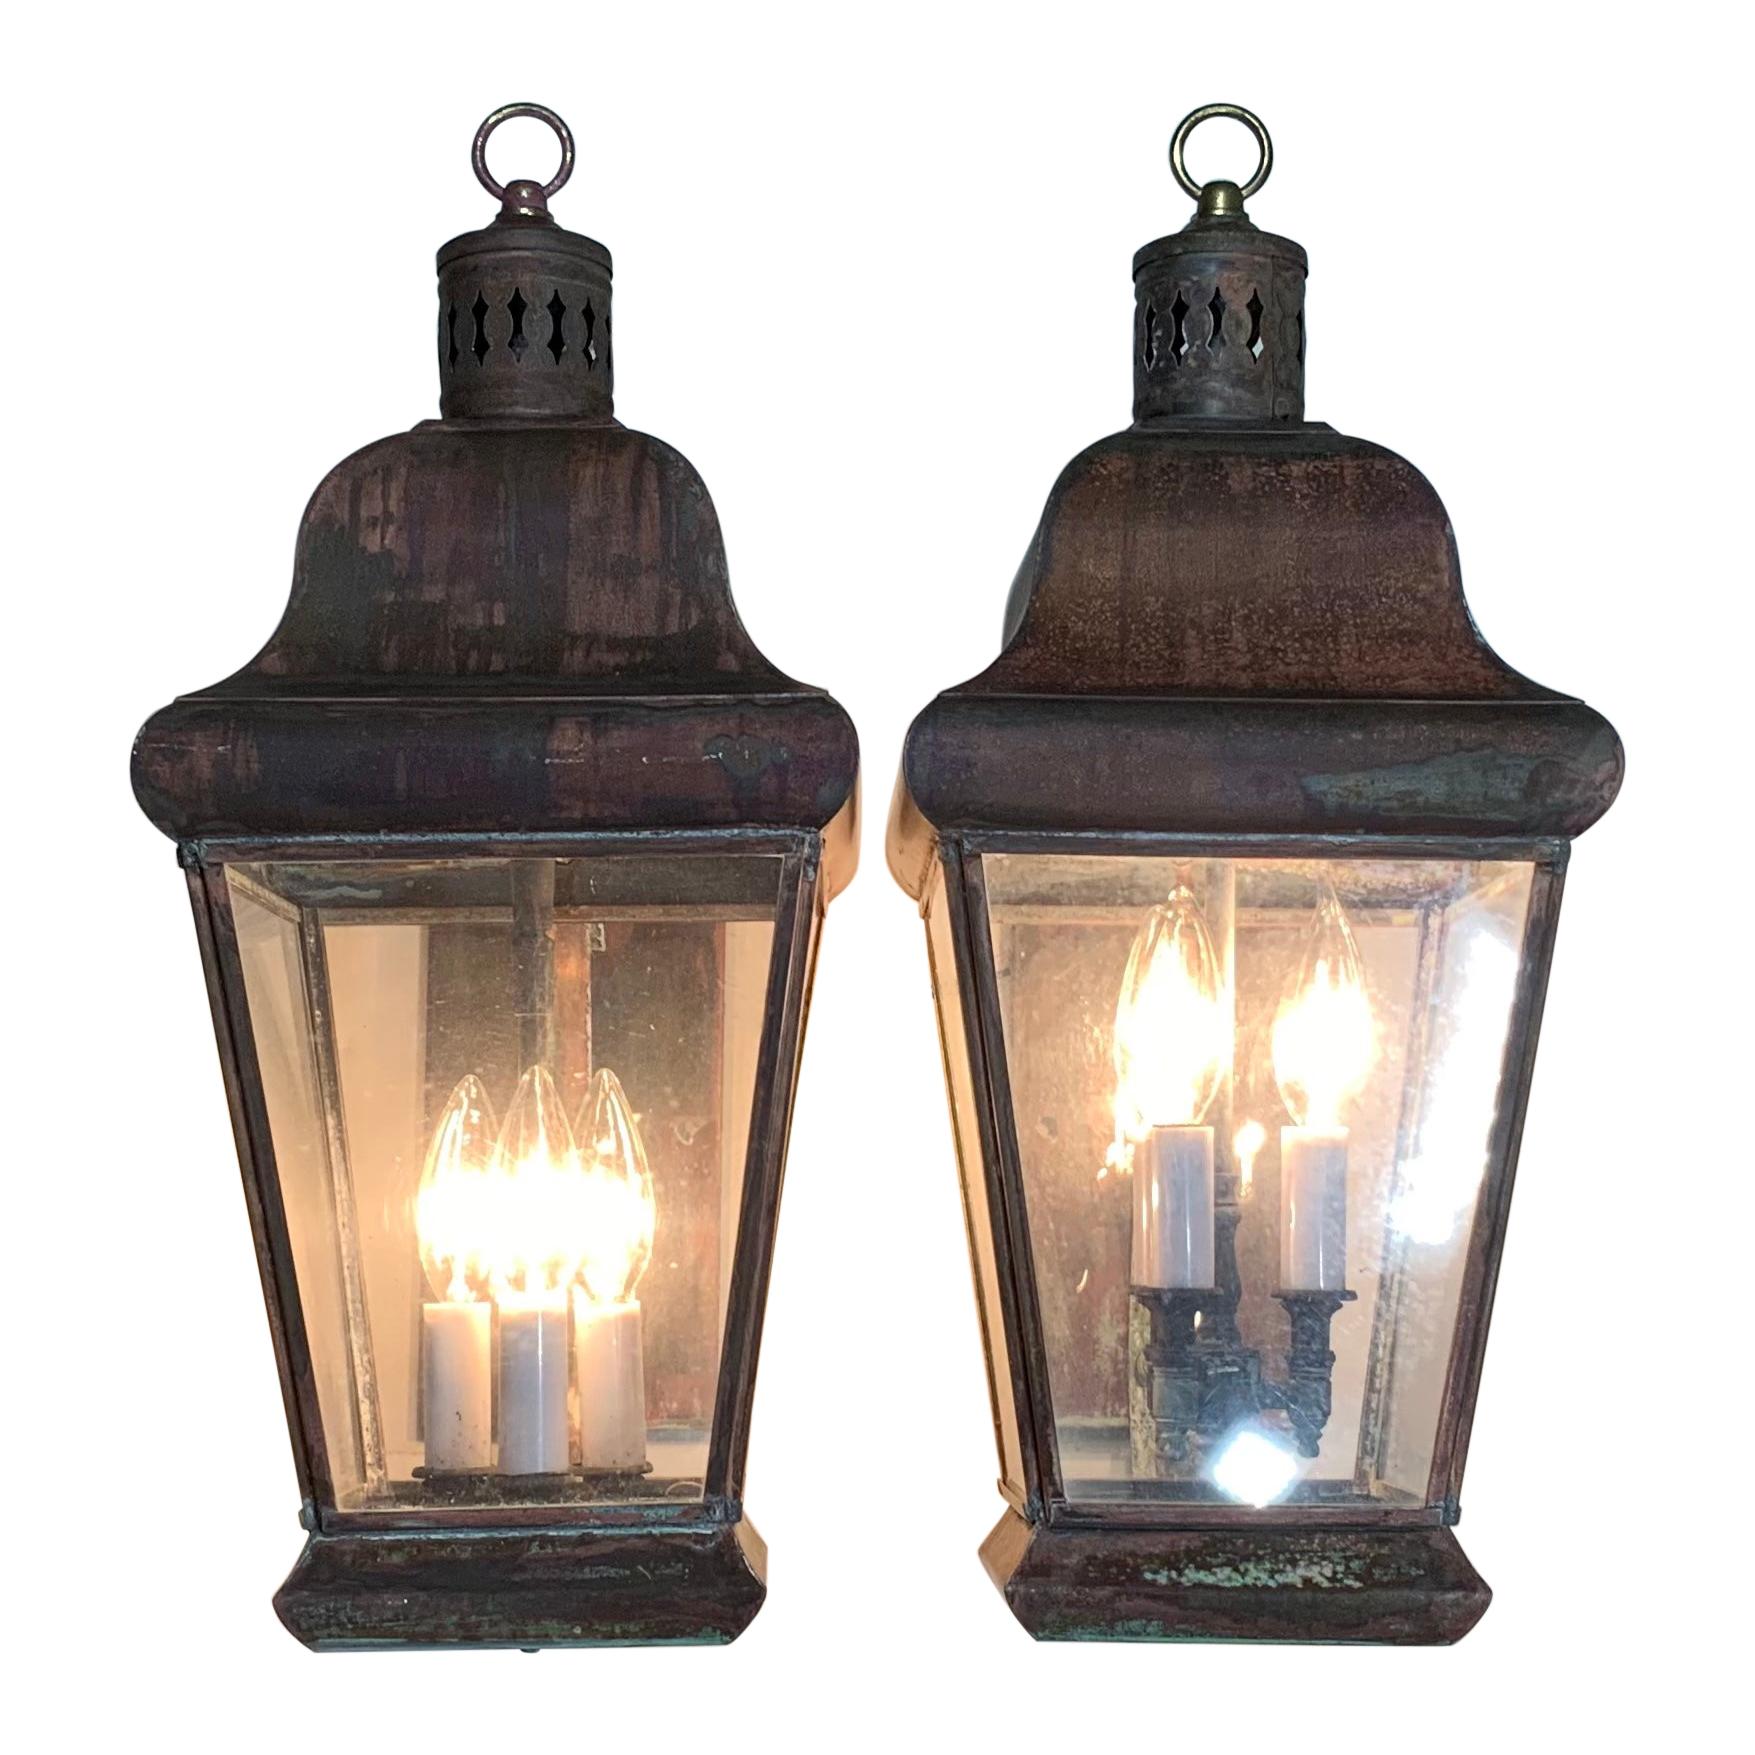 Pair of Vintage Wall Hanging Lantern